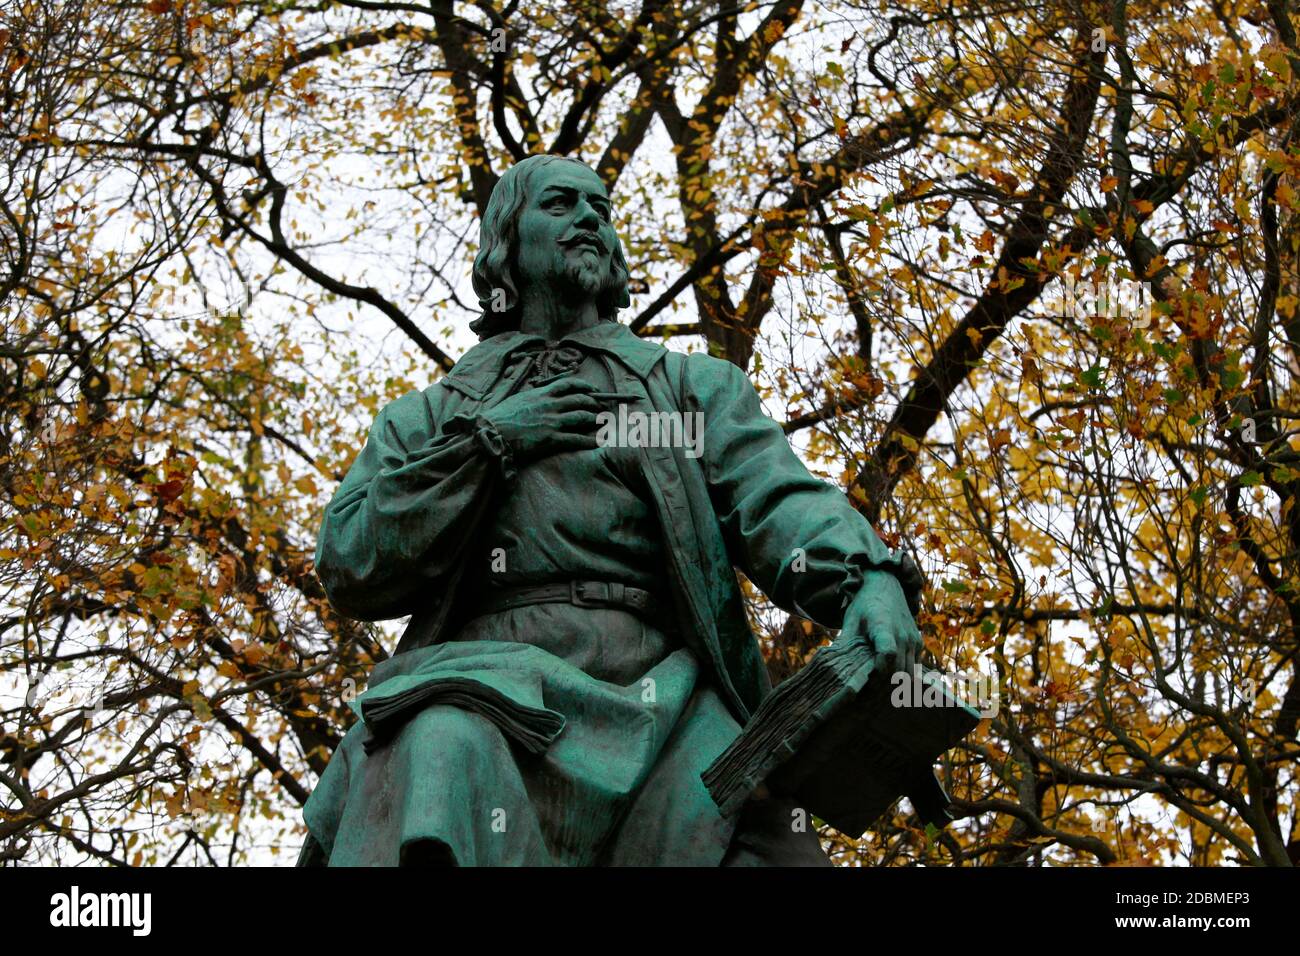 Das Jakob-Böhme-Denkmal im Park des Friedens erinnert an den Schuster und Theosophen, der in Görlitz wirkte. Görlitz kurbelt Böhme-Forschung An. Alle Foto Stock